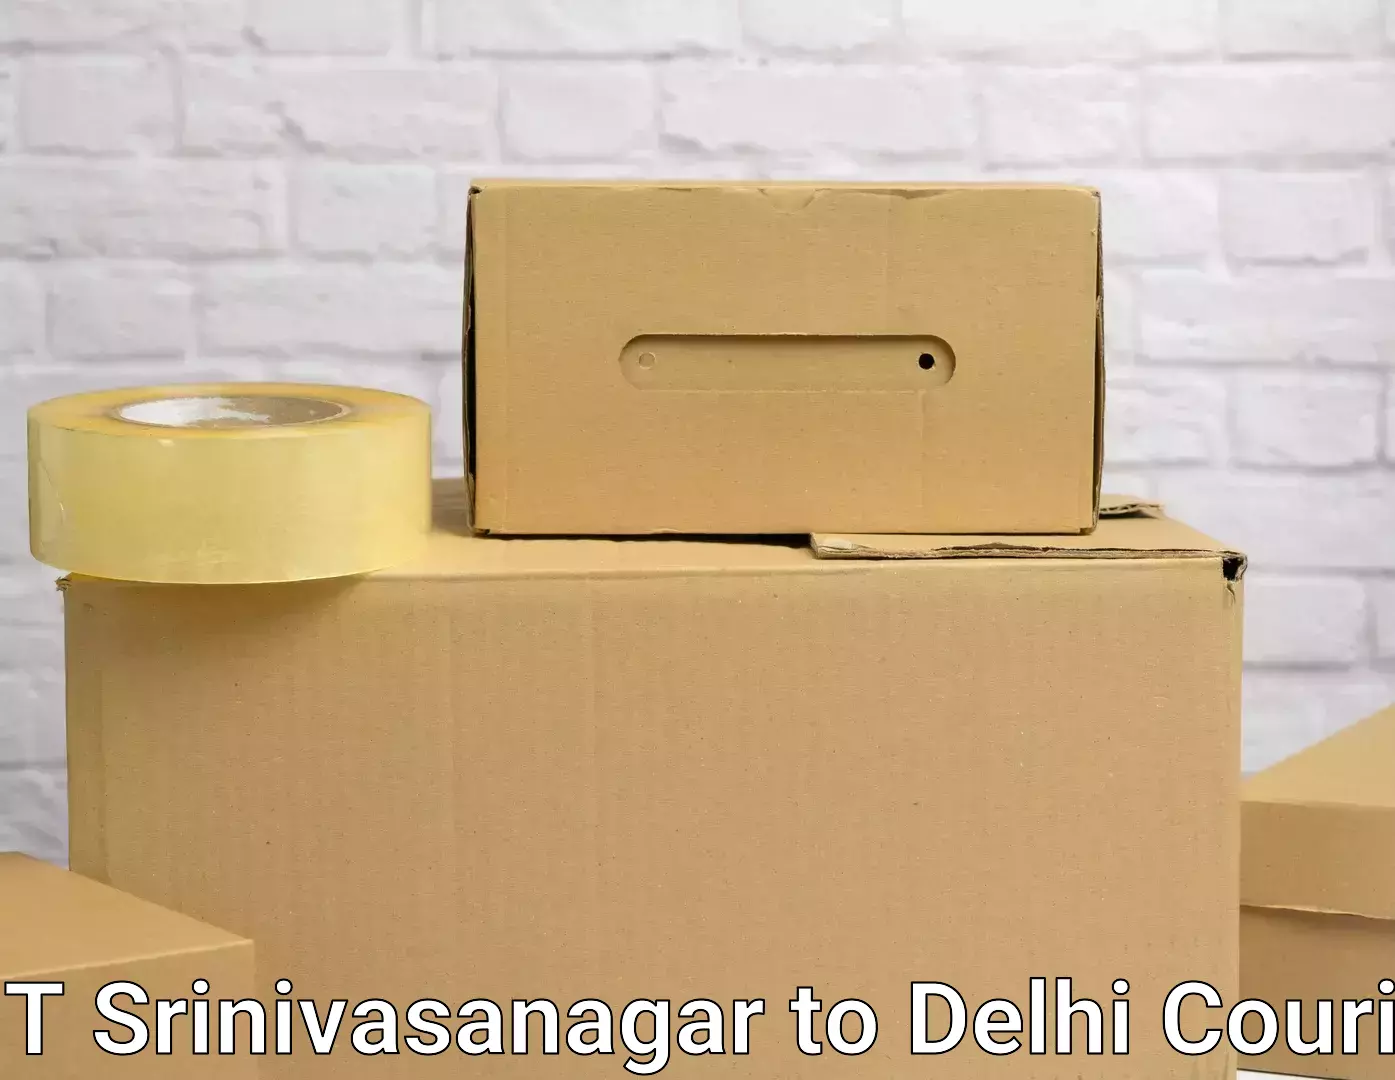 Full-service relocation NIT Srinivasanagar to Ramesh Nagar